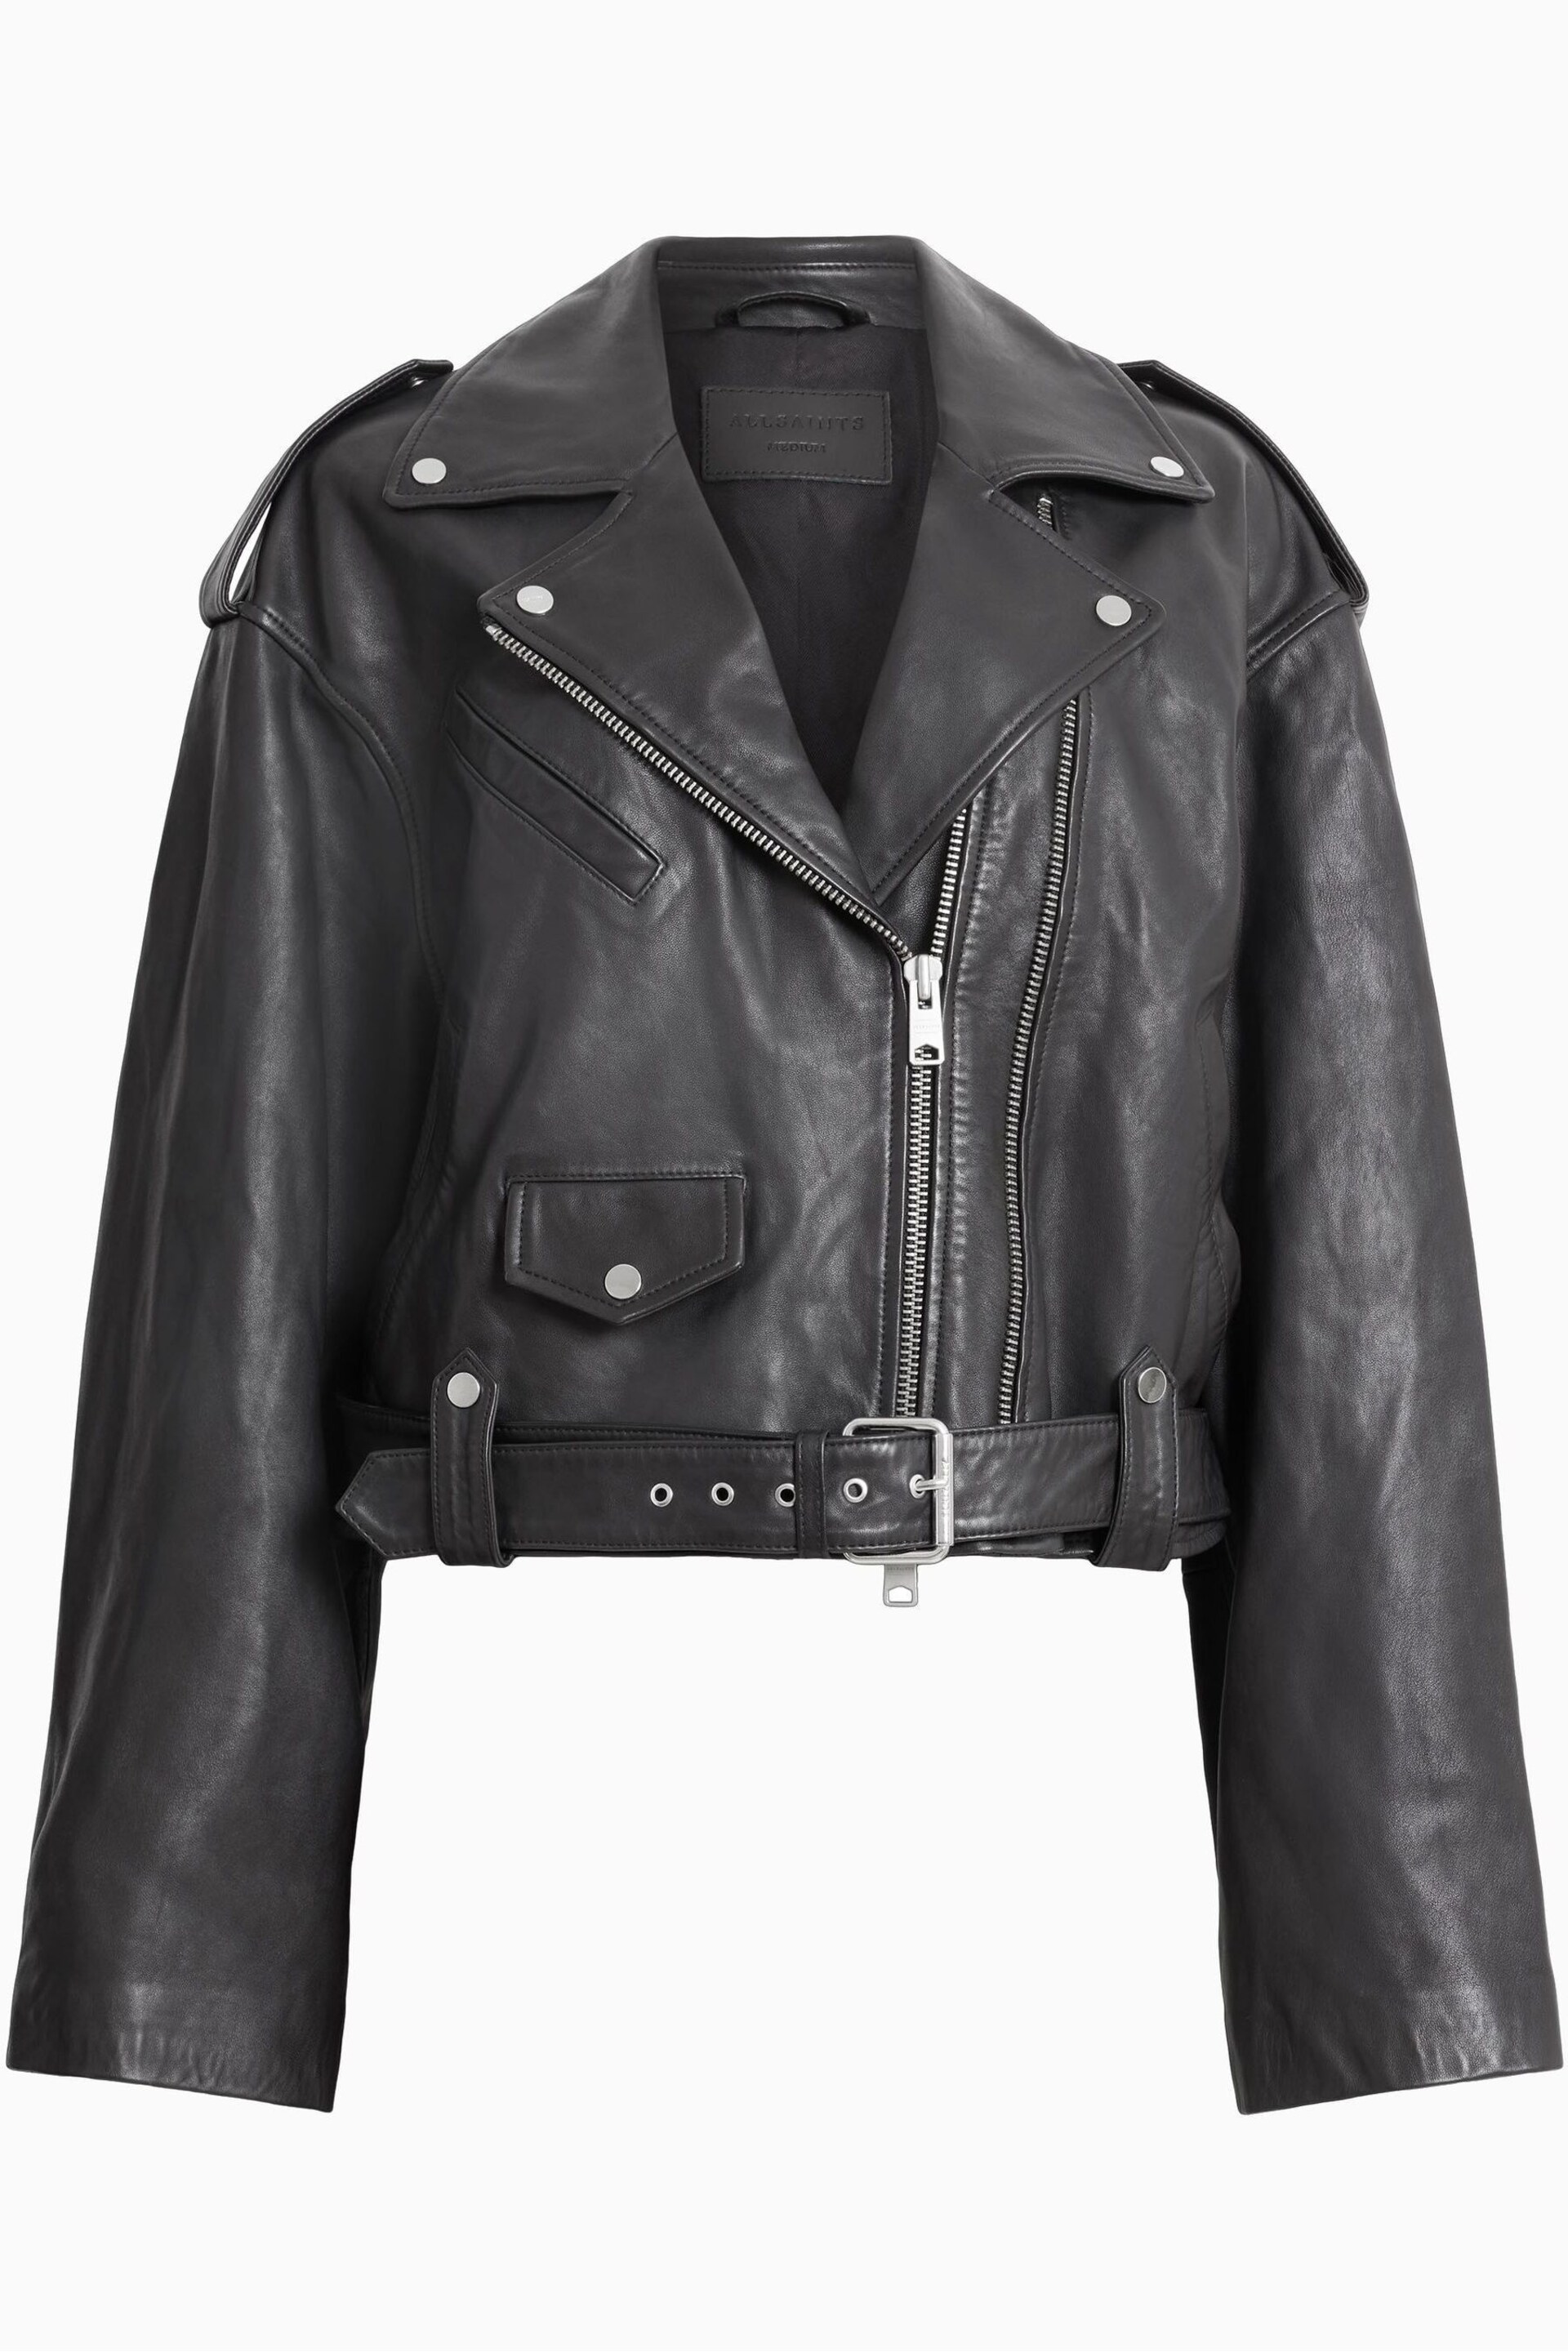 AllSaints Black Dayle Biker Jacket - Image 8 of 8